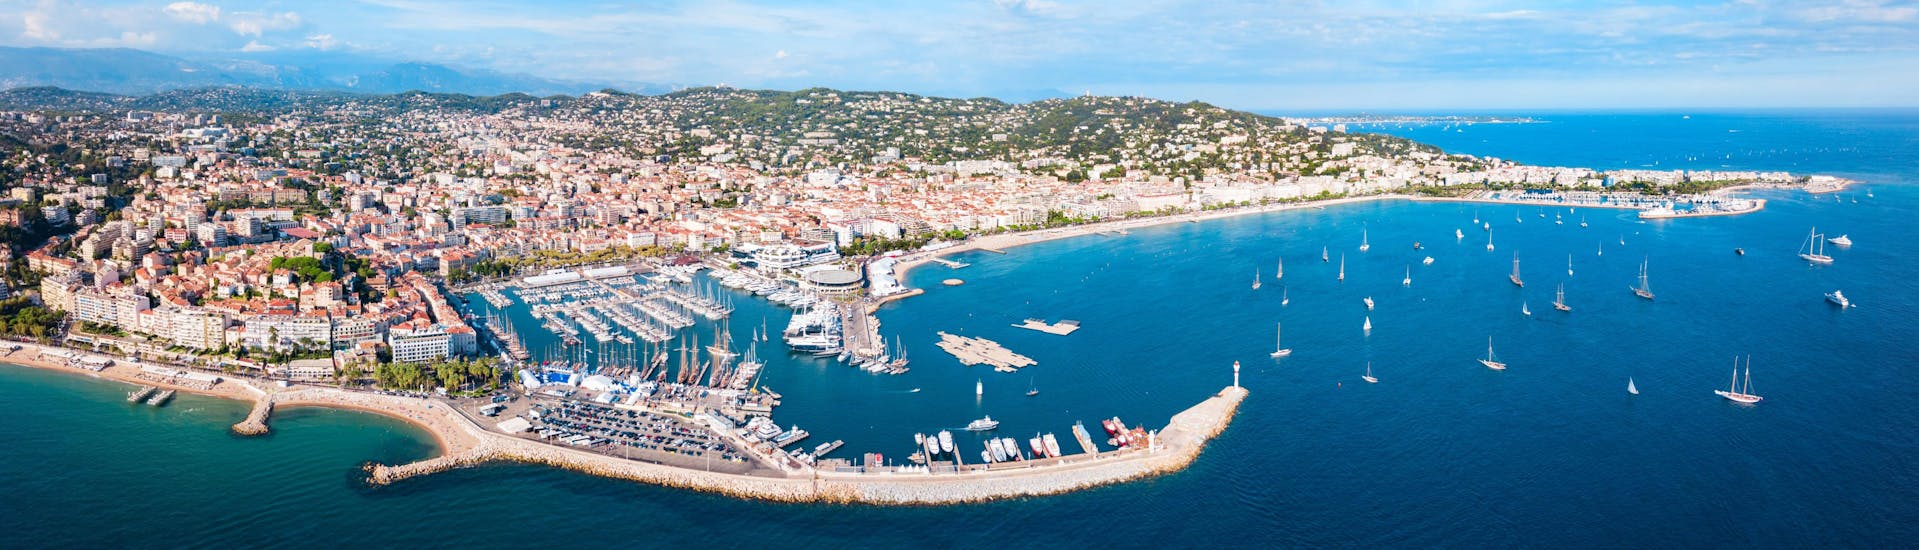 Un bateau navigue le long du littoral du parc naturel de l'Estérel, qui est une destination populaire pour les balades en bateau depuis Cannes.